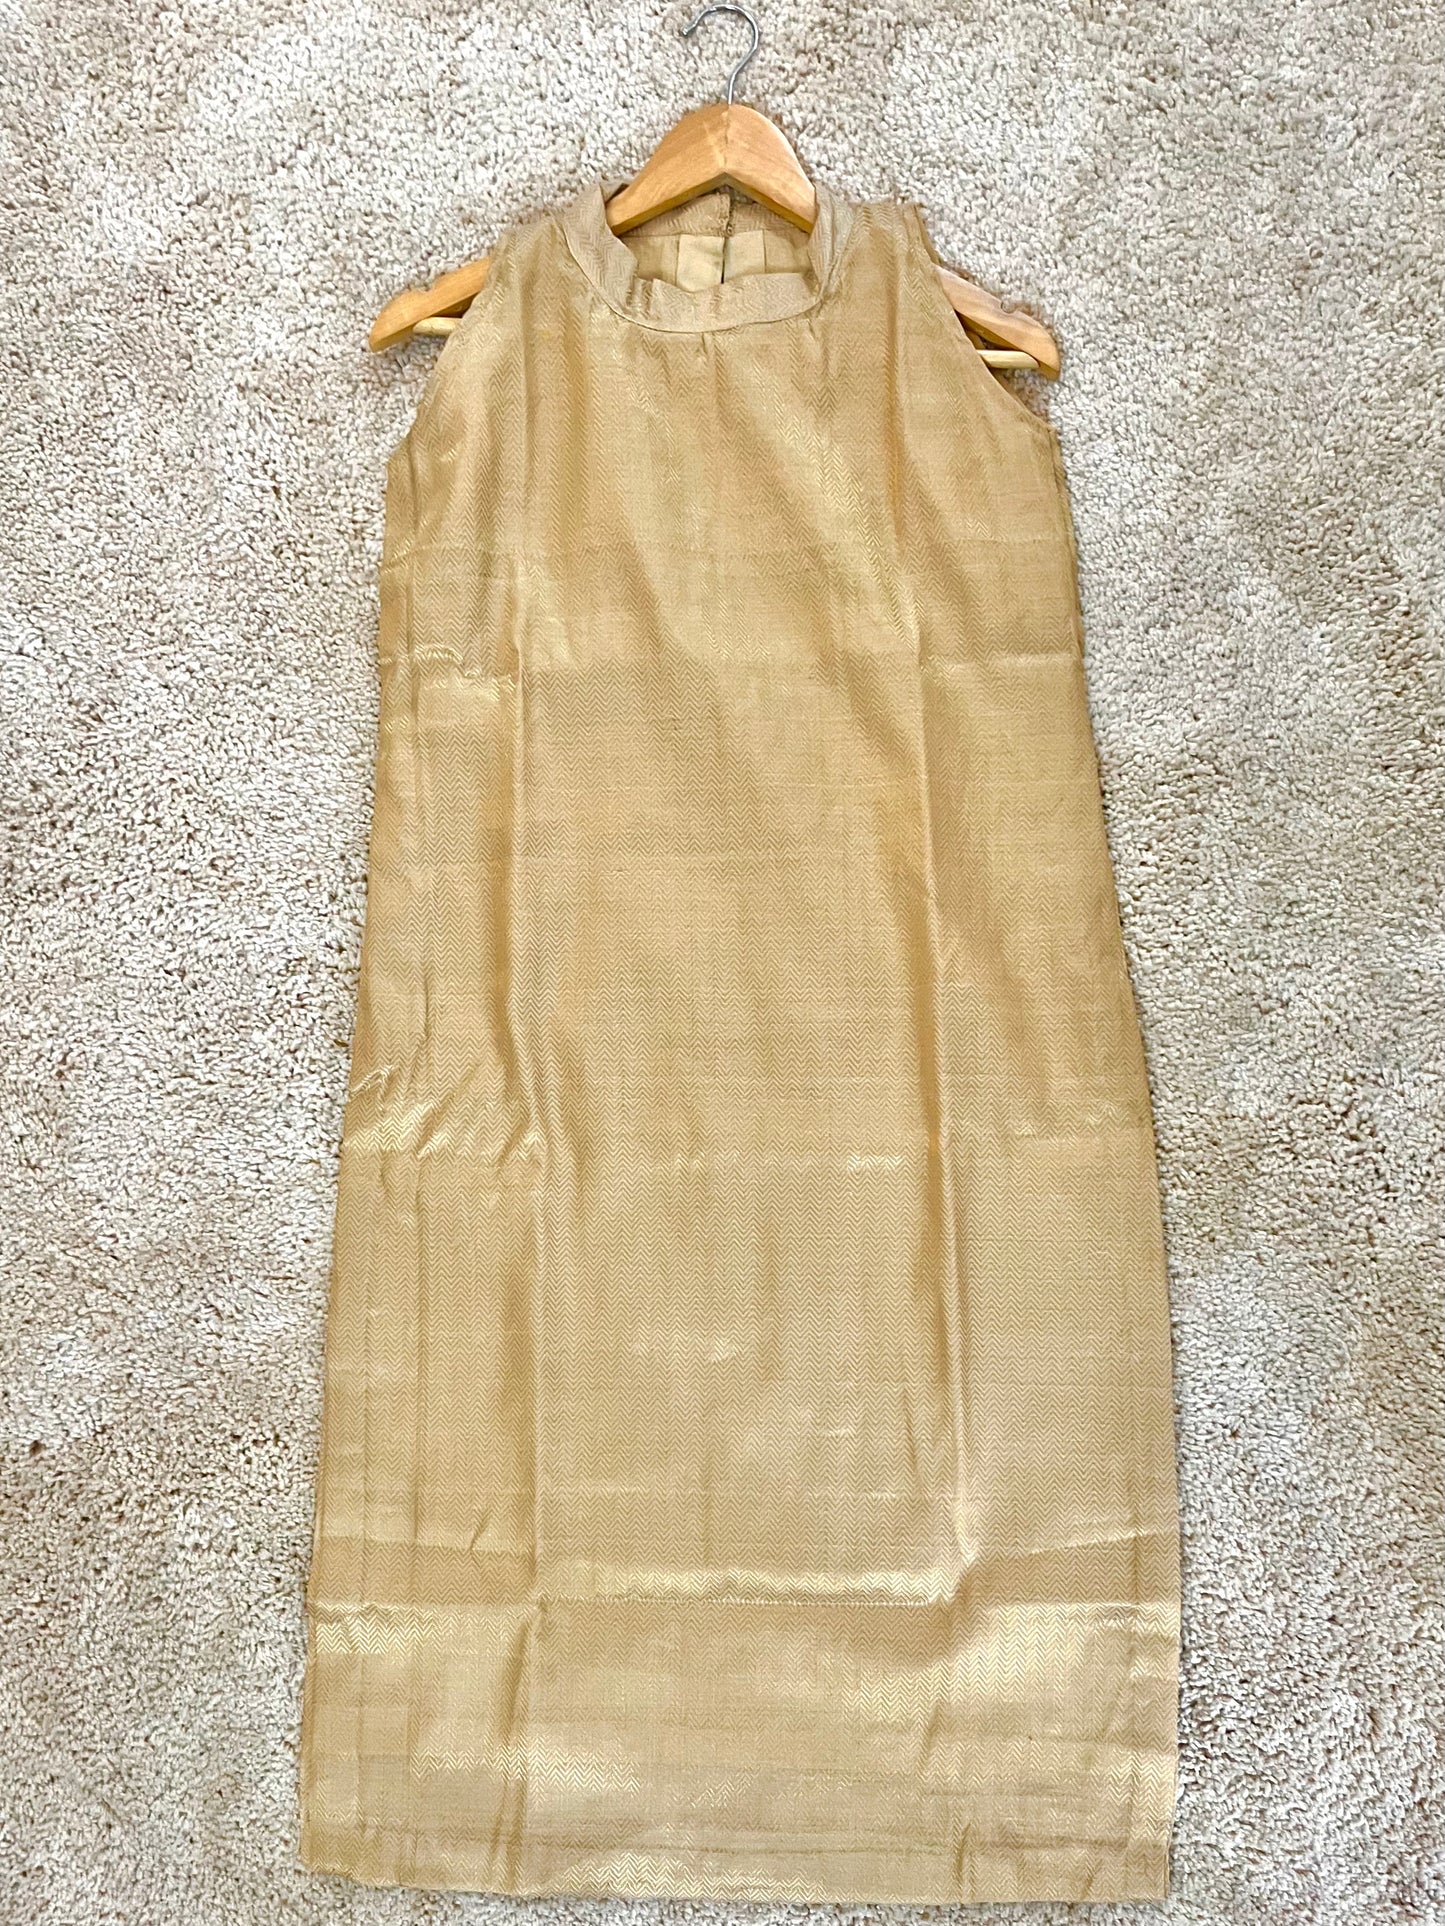 Beige gold maheshwari silk kurta with zari pattern all over